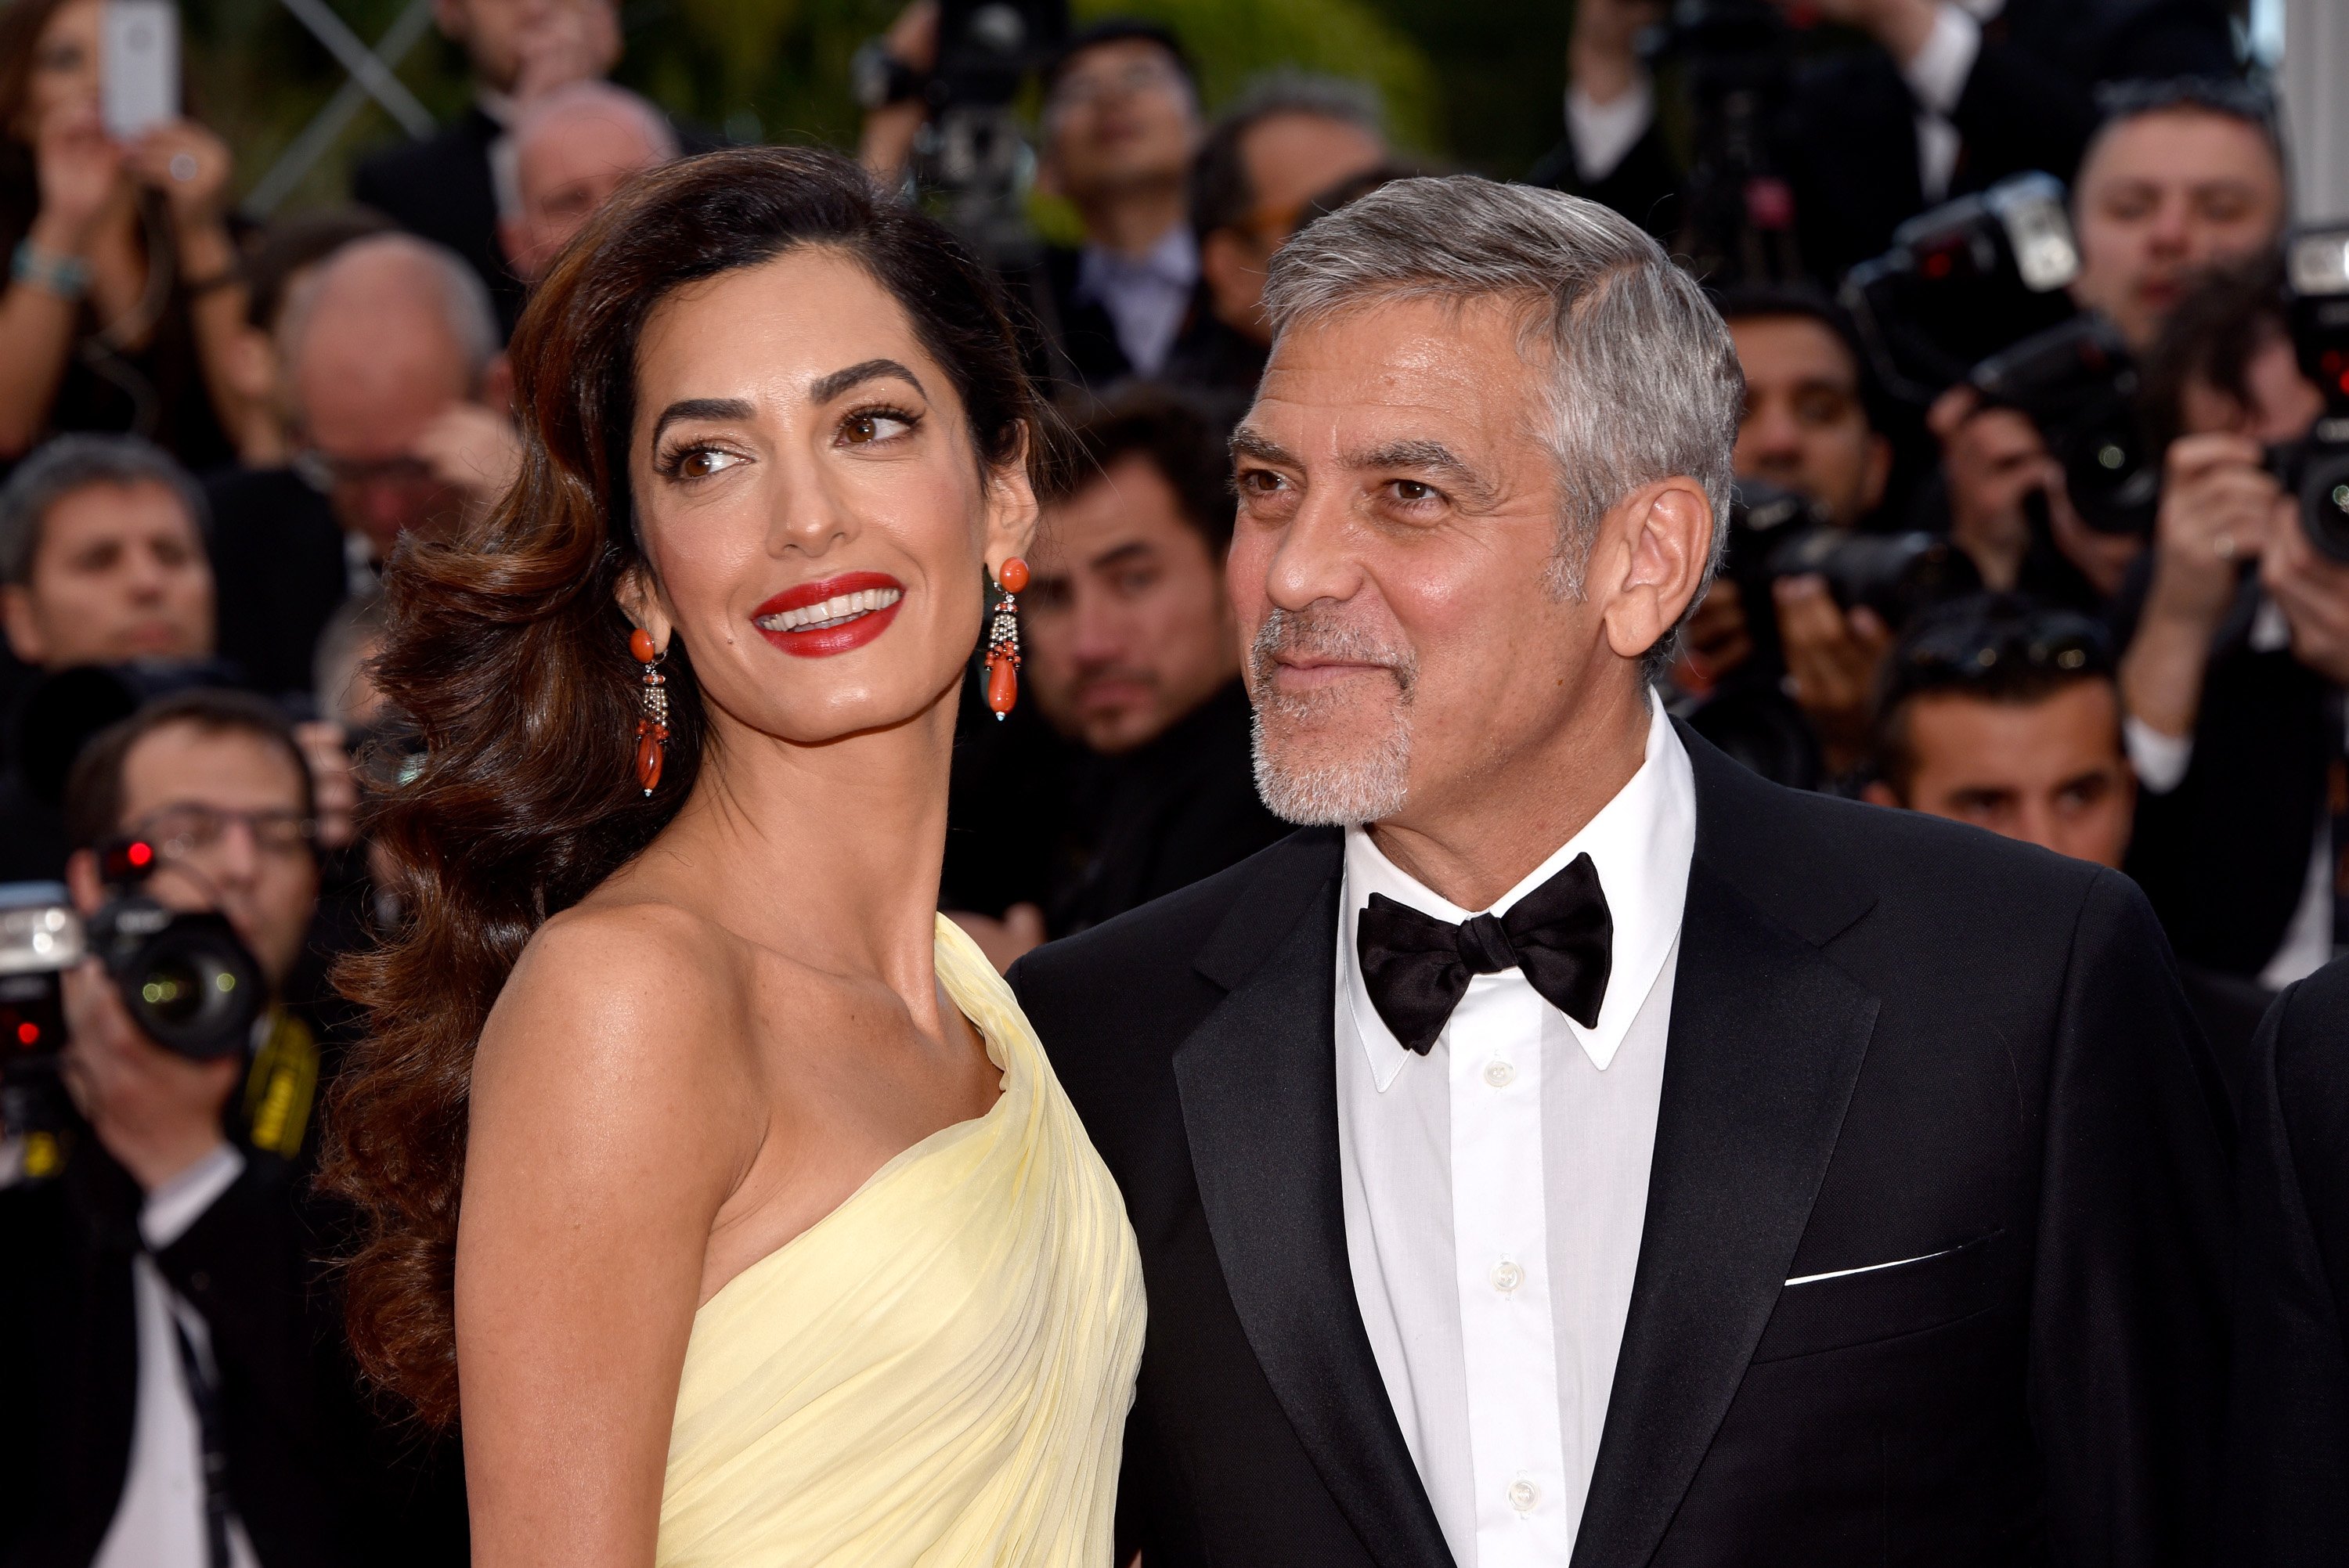 Amal und George Clooney bei der Premiere von "Money Monster" während der 69. jährlichen Filmfestspiele von Cannes in Cannes, Frankreich am 12. Mai 2016 | Quelle: Getty Images